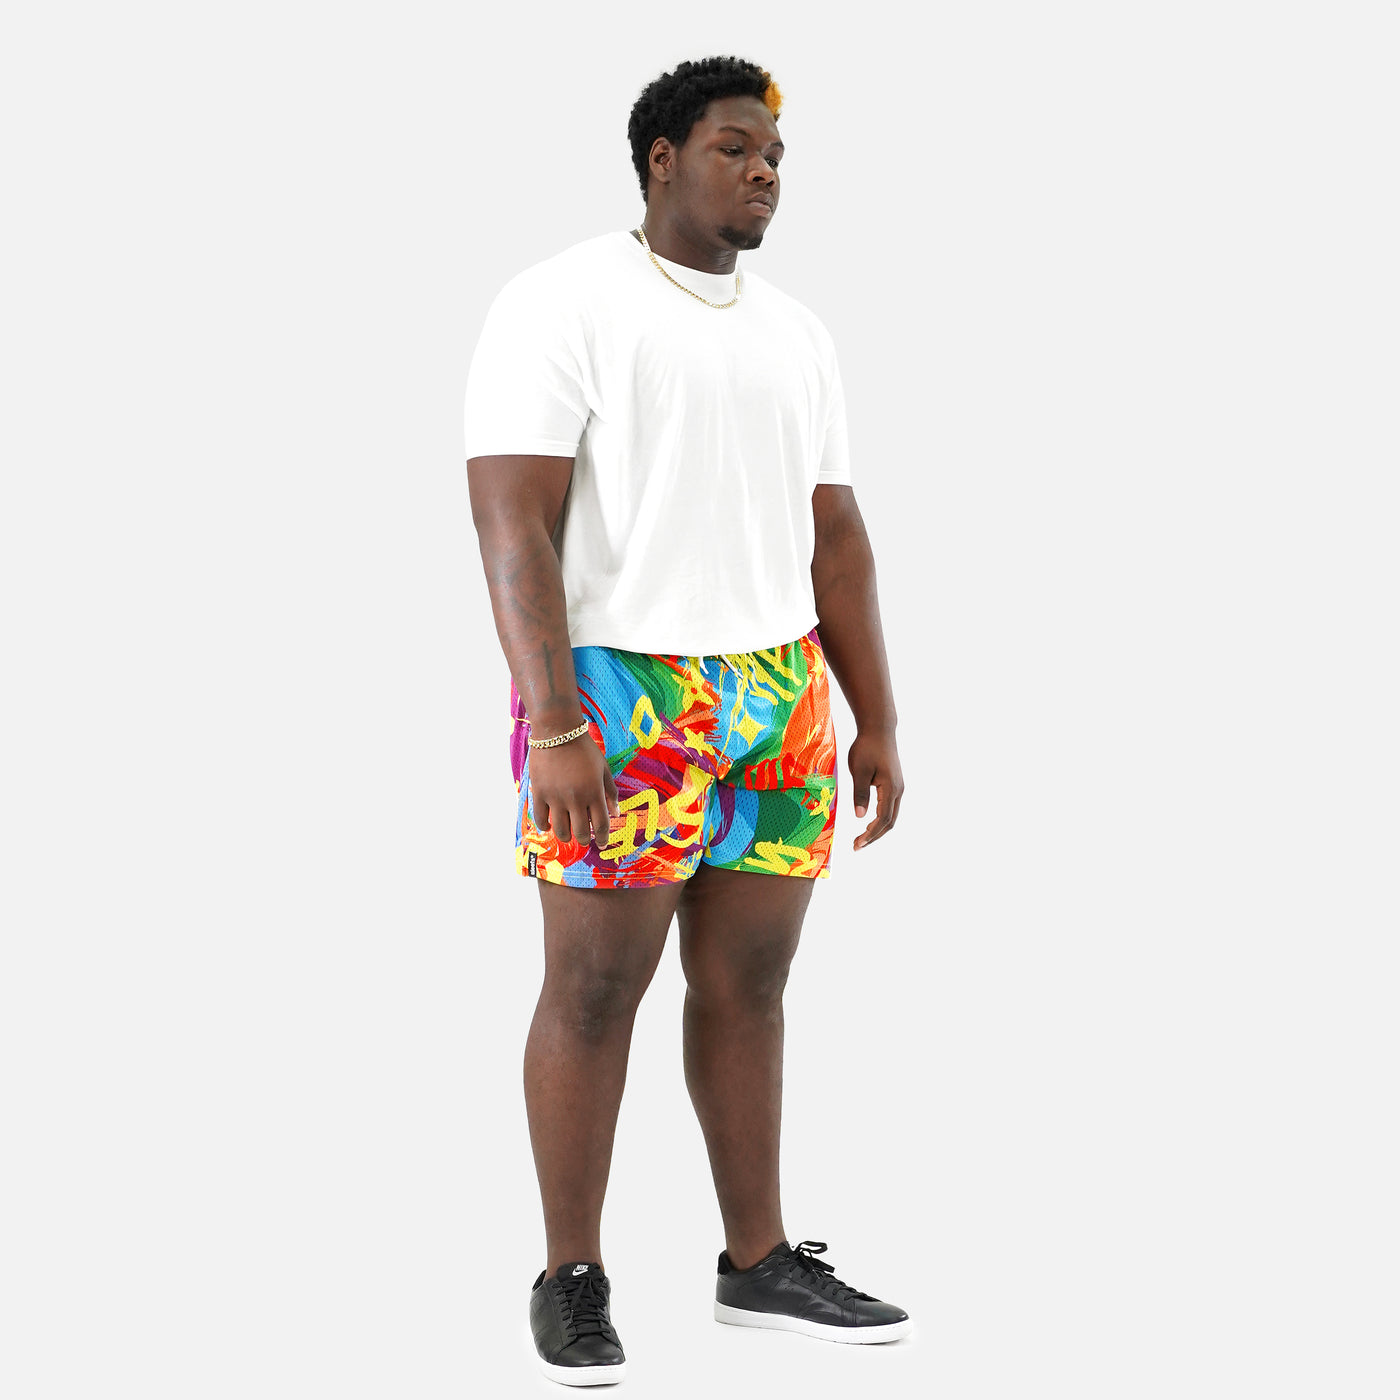 SLF Milan Colorful Shorts - Big - 7"